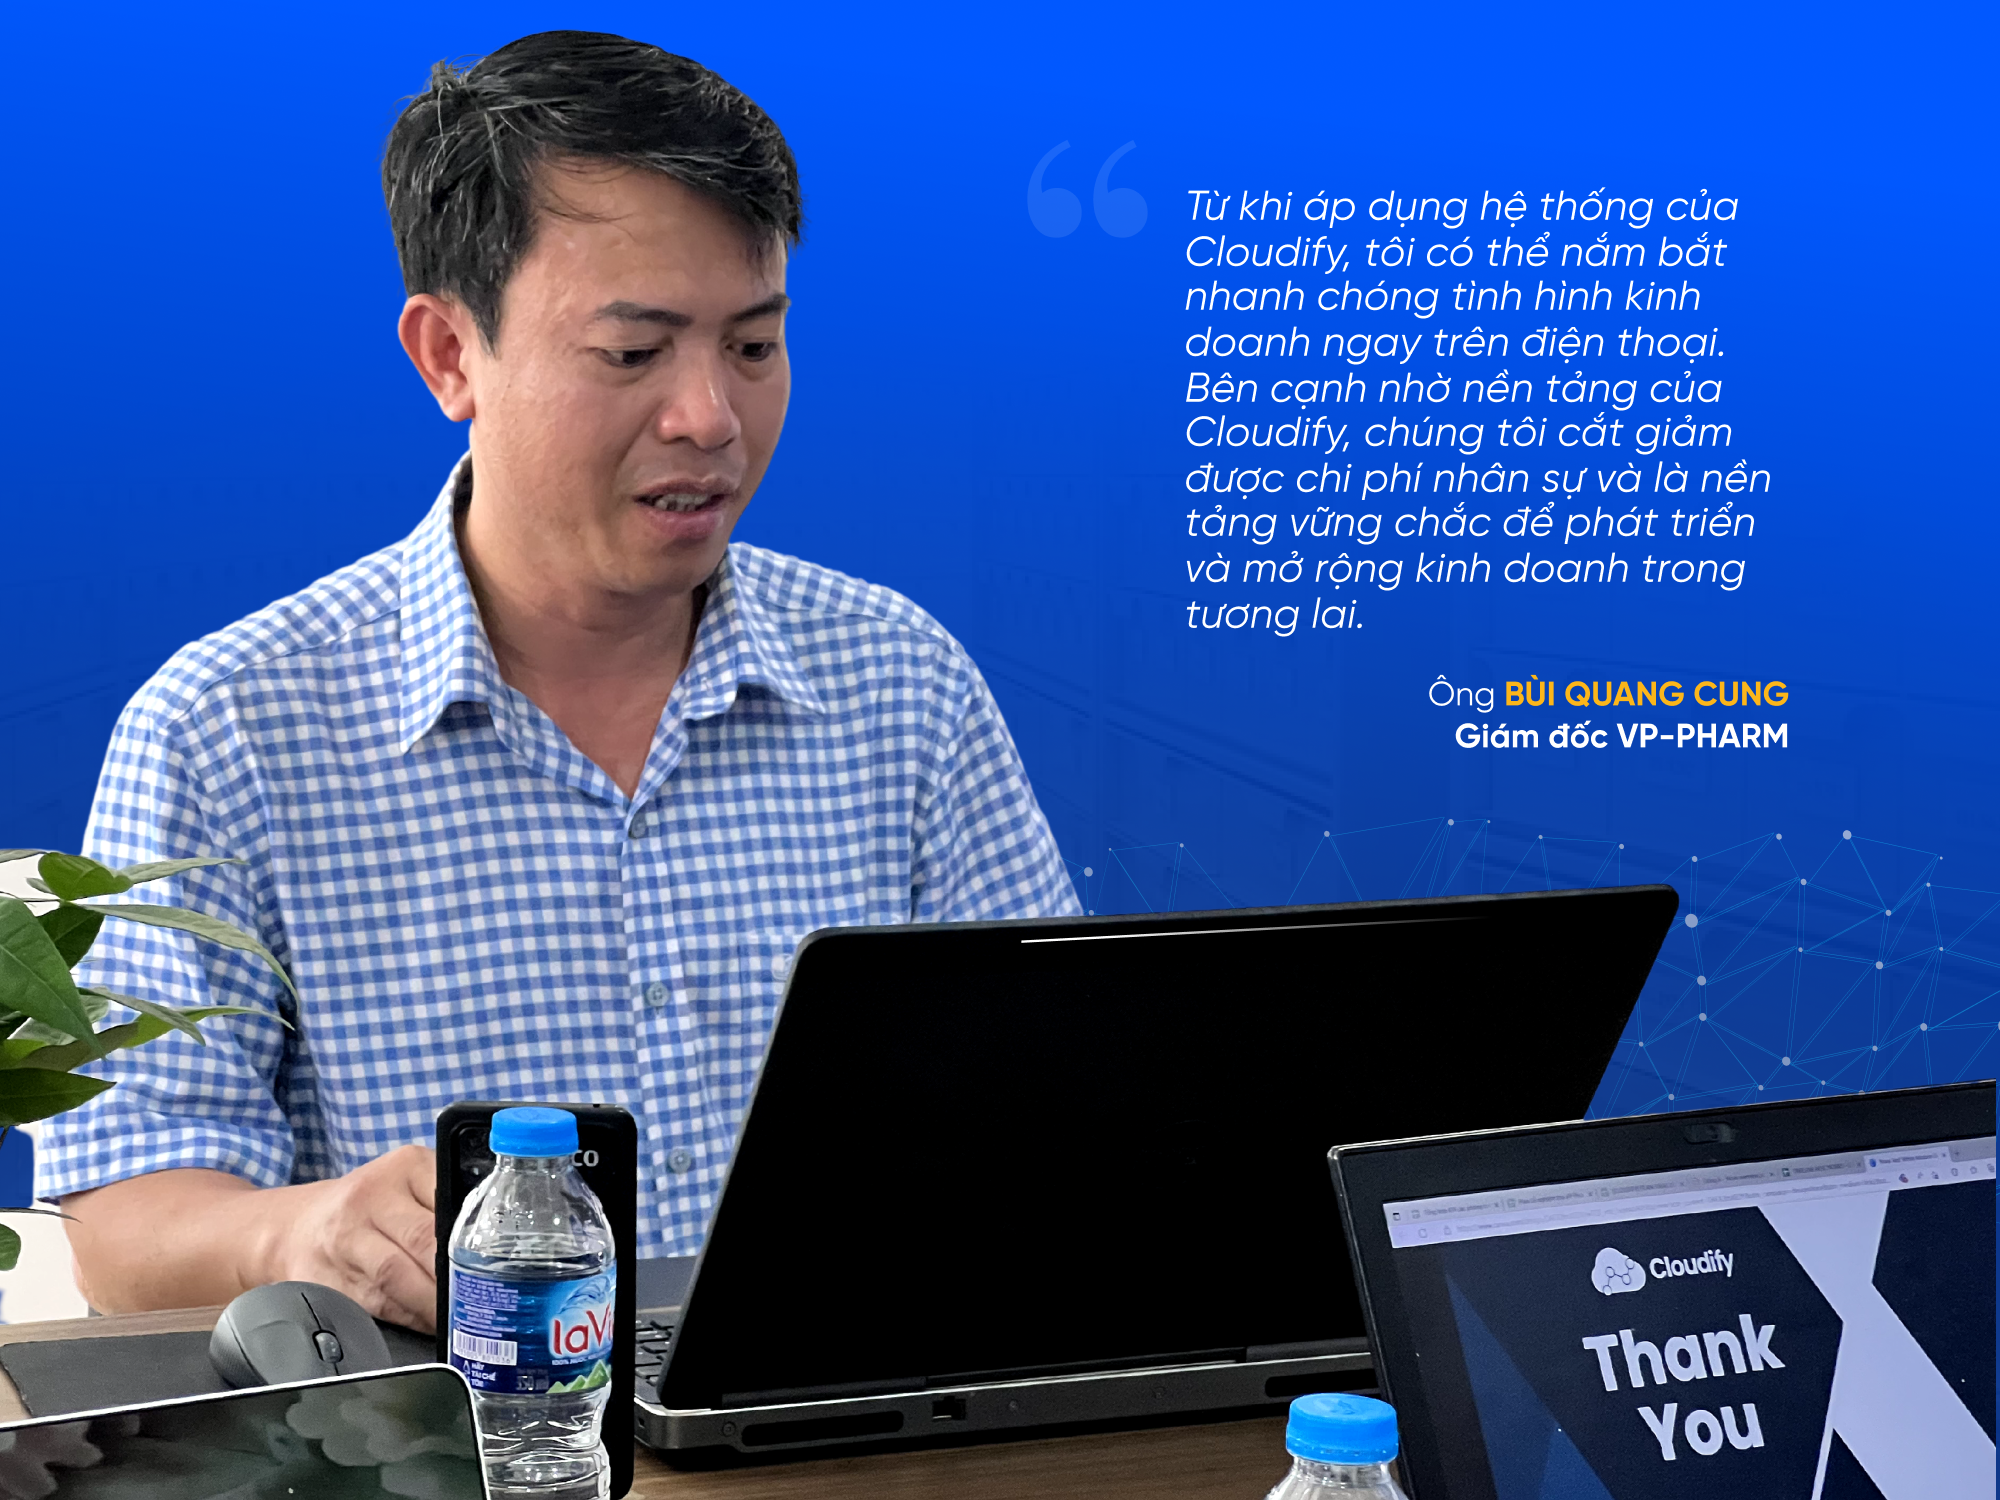 Ông Bùi Quang Cung - Giám đốc của VP-PHARM chia sẻ sau 6 tháng sử dụng Cloudify ERP 